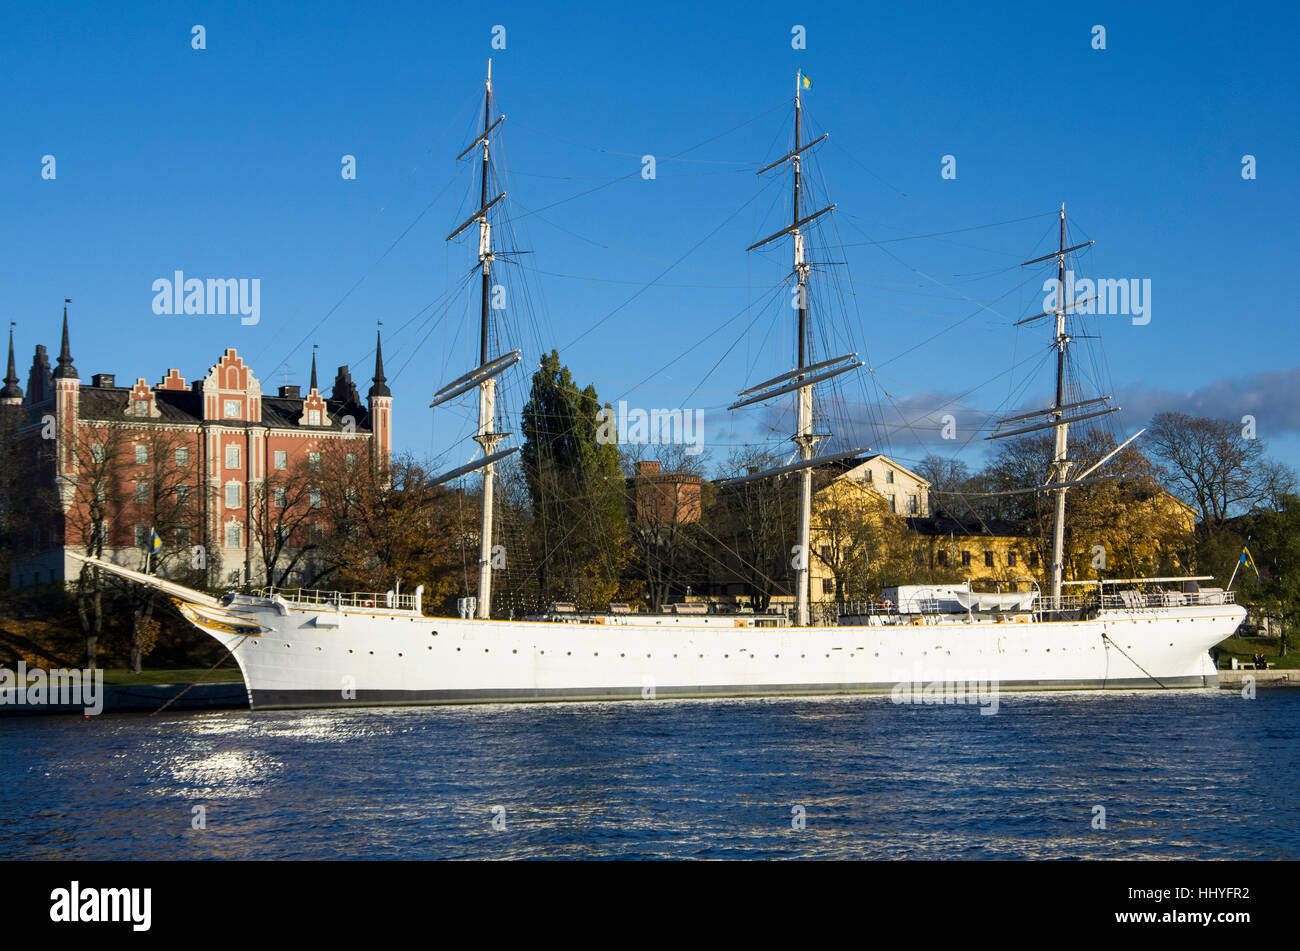 Viaggi, navi, barca a vela, barca a vela, barca a remi, imbarcazione natante, Svezia, Foto Stock